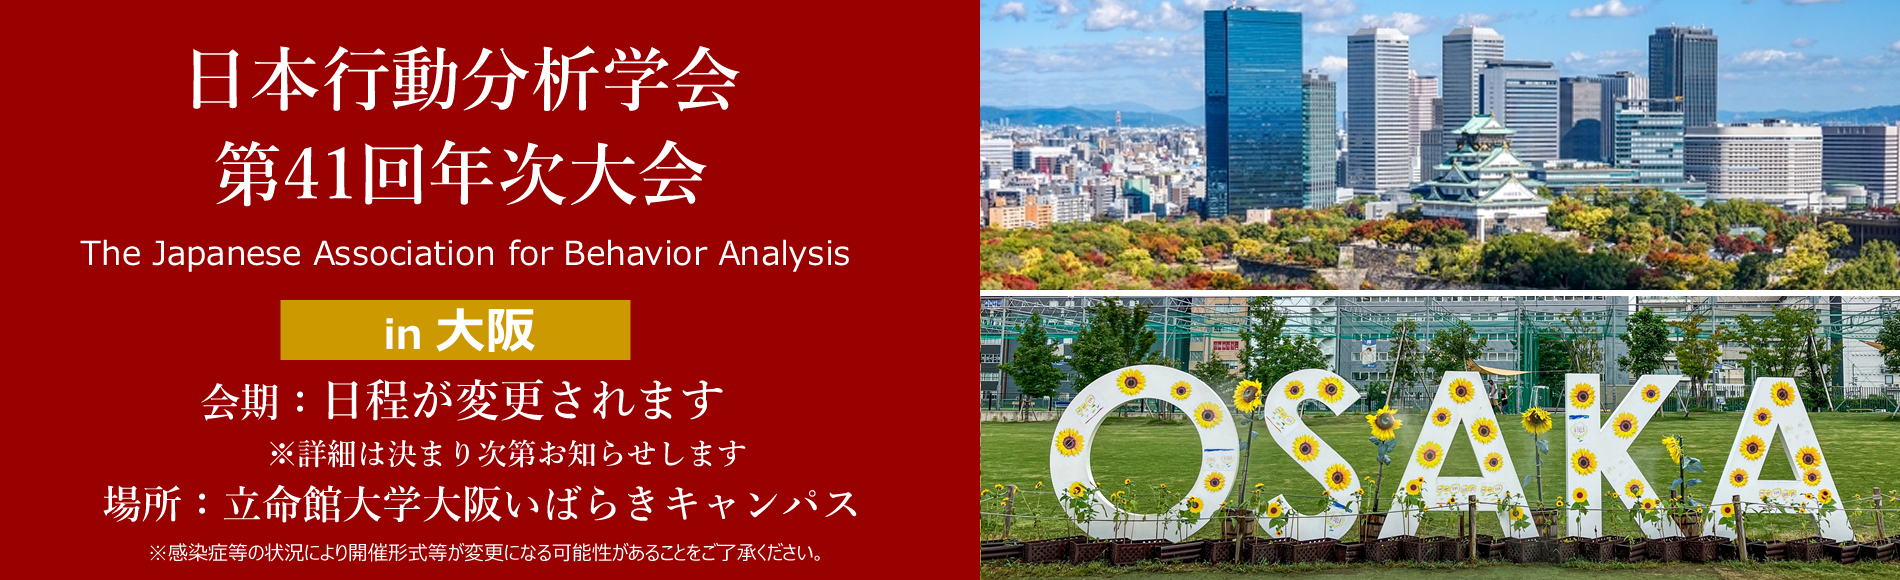 日本行動分析学会 第41回年次大会